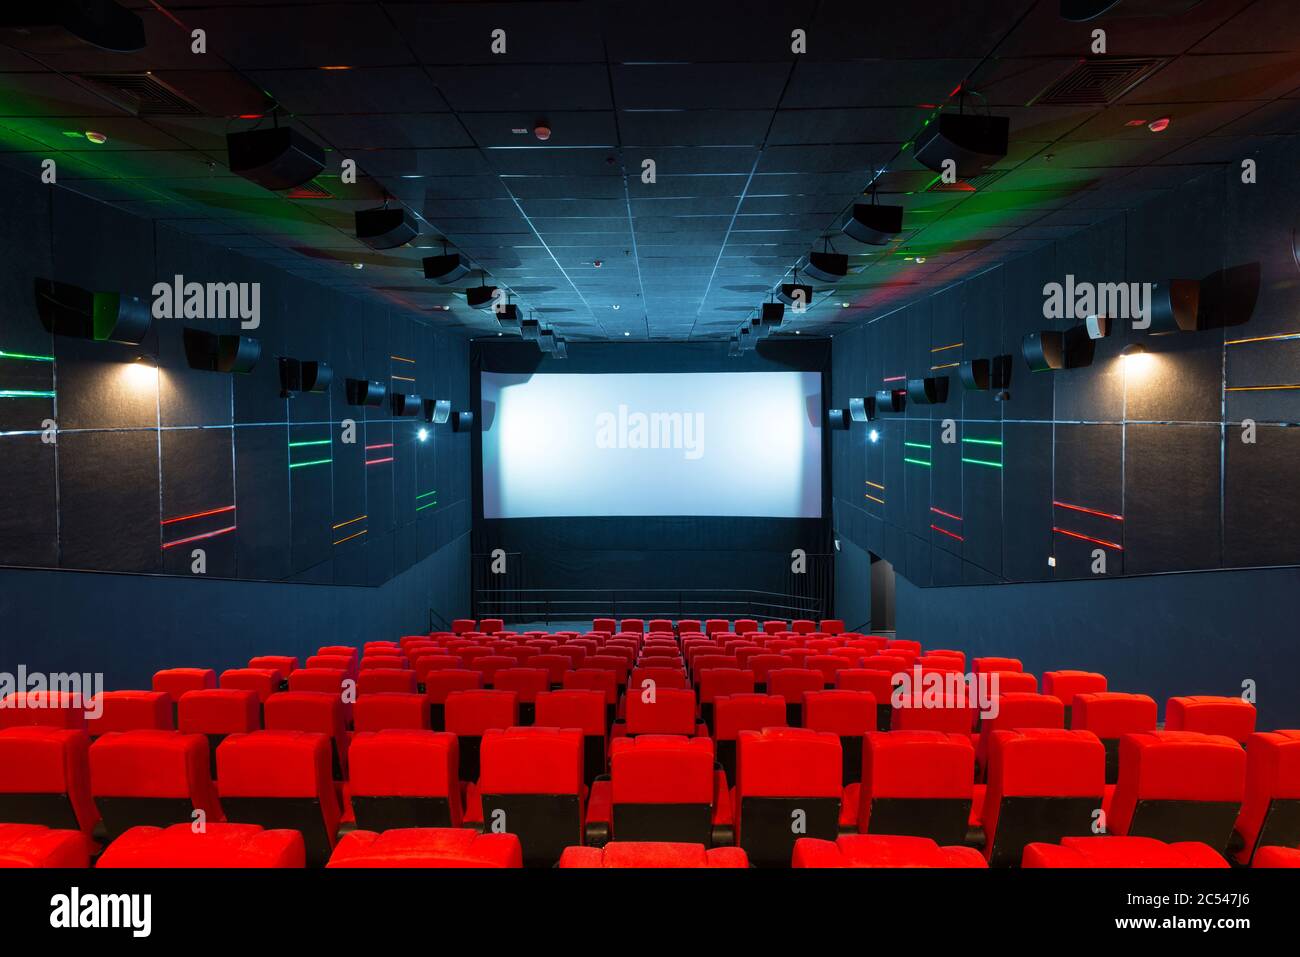 Vue panoramique d'un cinéma vide de luxe avec écran. Salle de cinéma contemporaine avec éclairage LED. Panorama du confort moderne Banque D'Images